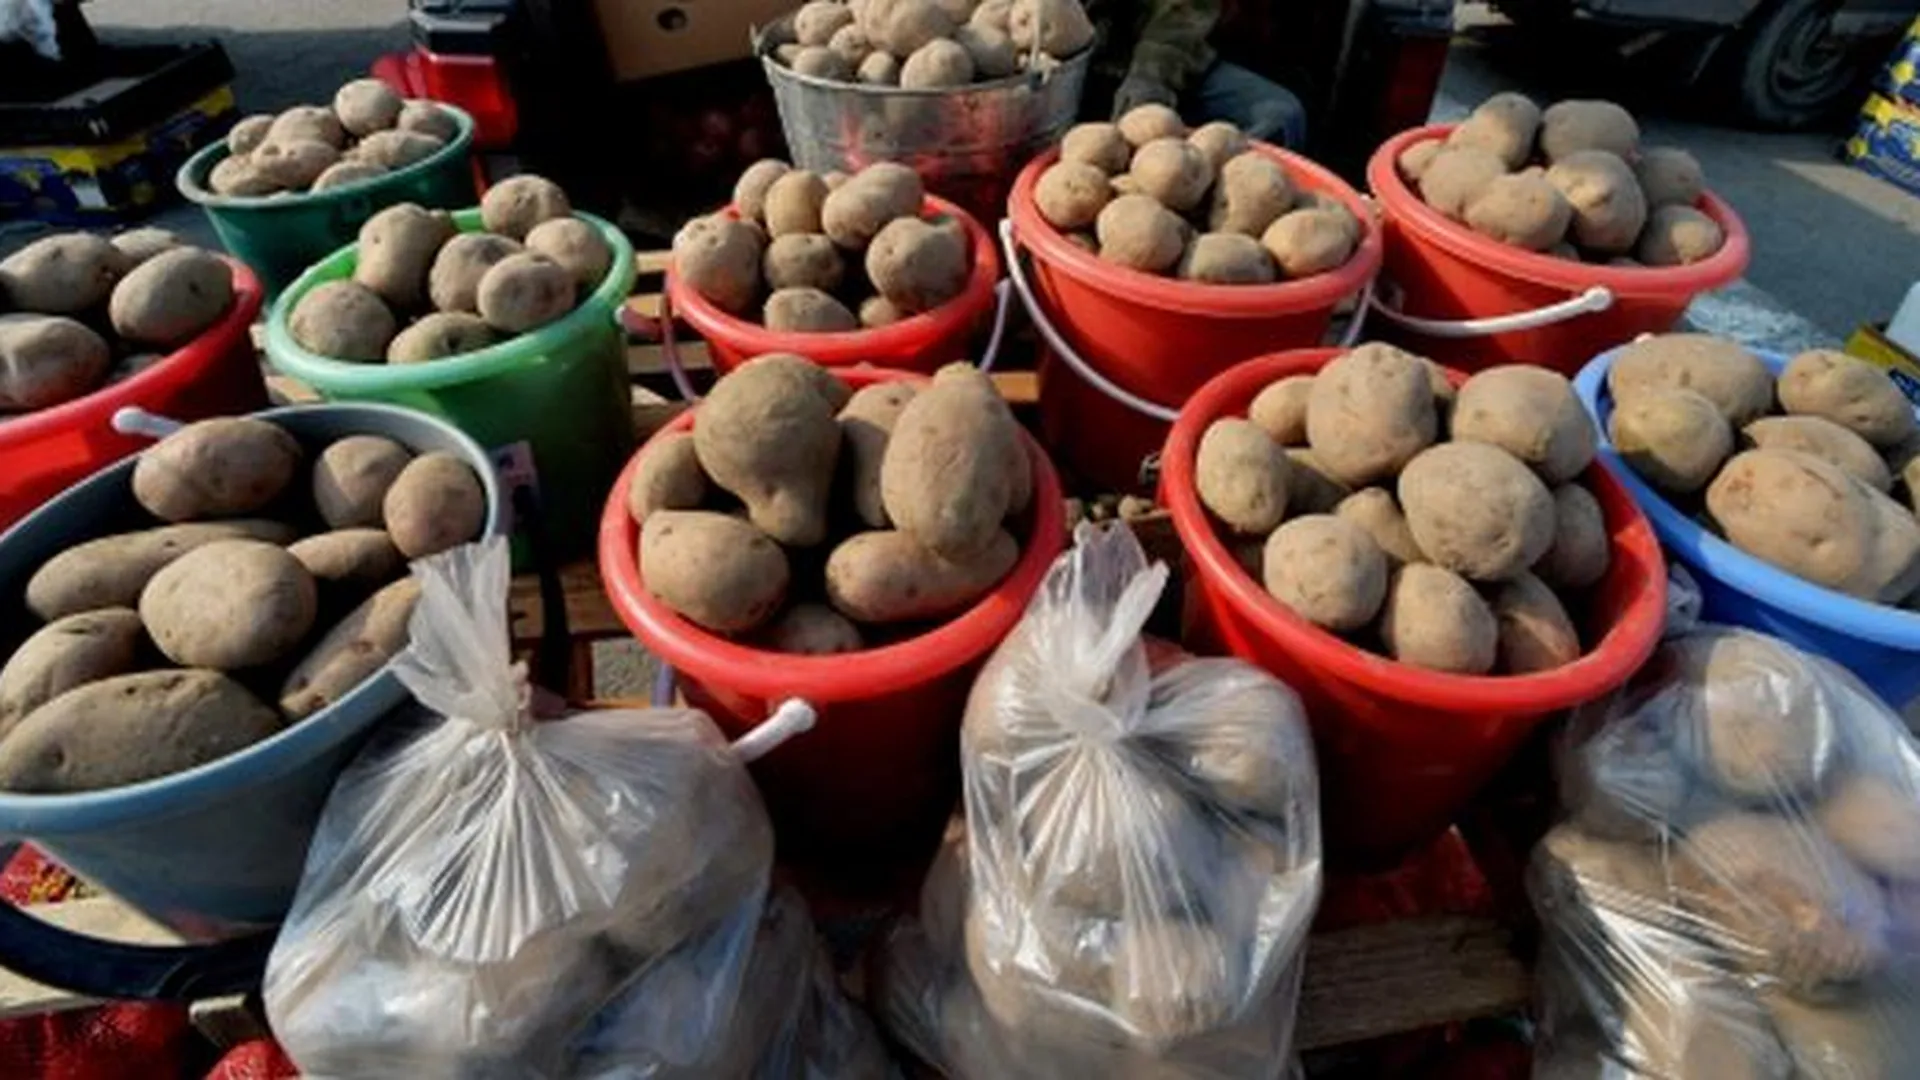 Цена на лук и картошку на Ценопадах в 2-3 раза ниже среднерыночной - Посаженников